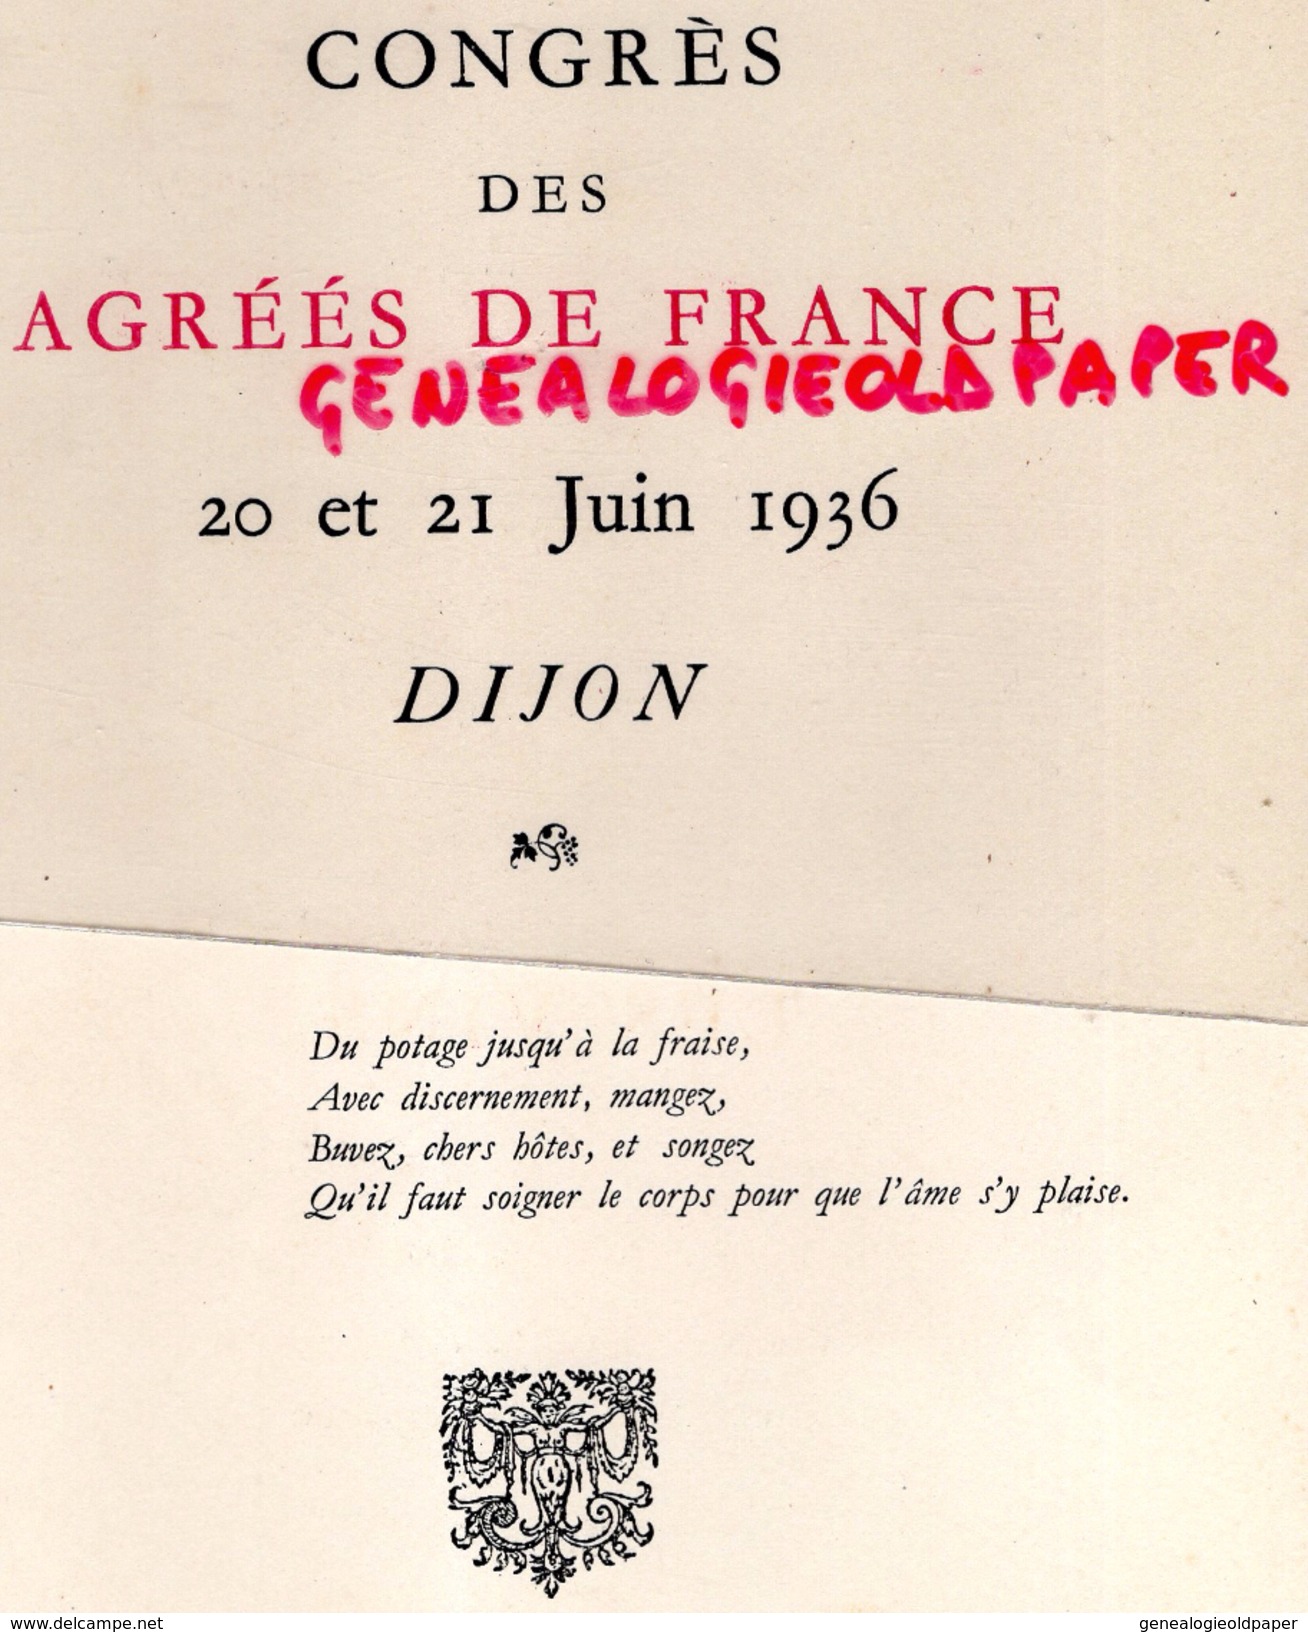 21 - DIJON - BEAU MENU CARTONNE- TOUR DE BAR FUSAIN D. RICHIER- CONGRES DES AGREES DE FRANCE-1936- RACOUCHOT TRAITEUR- - Menus